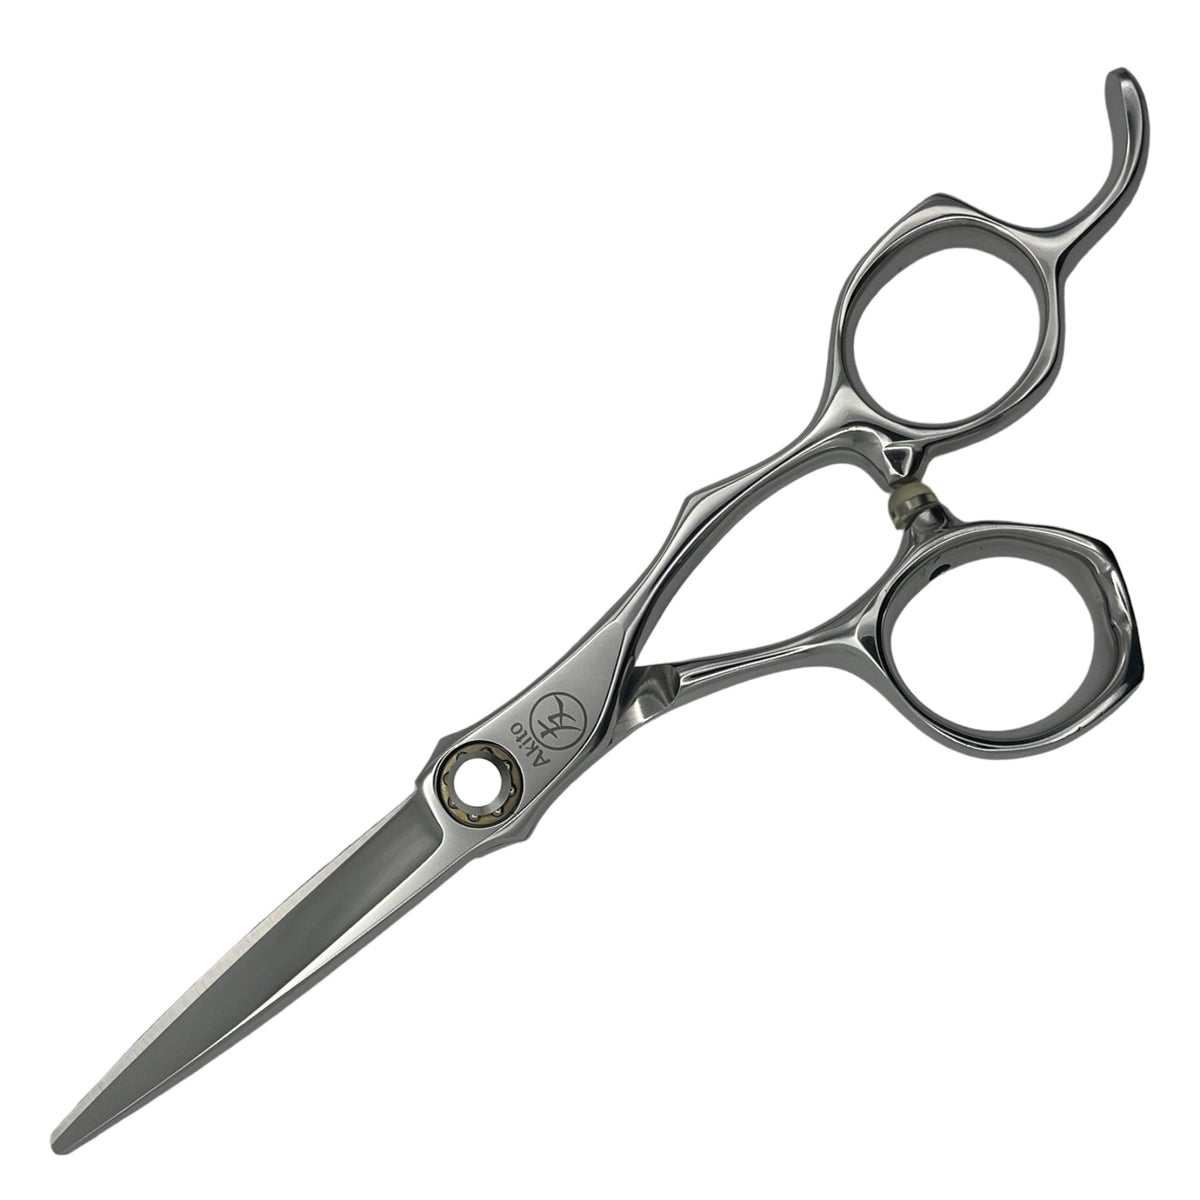 Kasai X Hair Scissors 5.5 inch